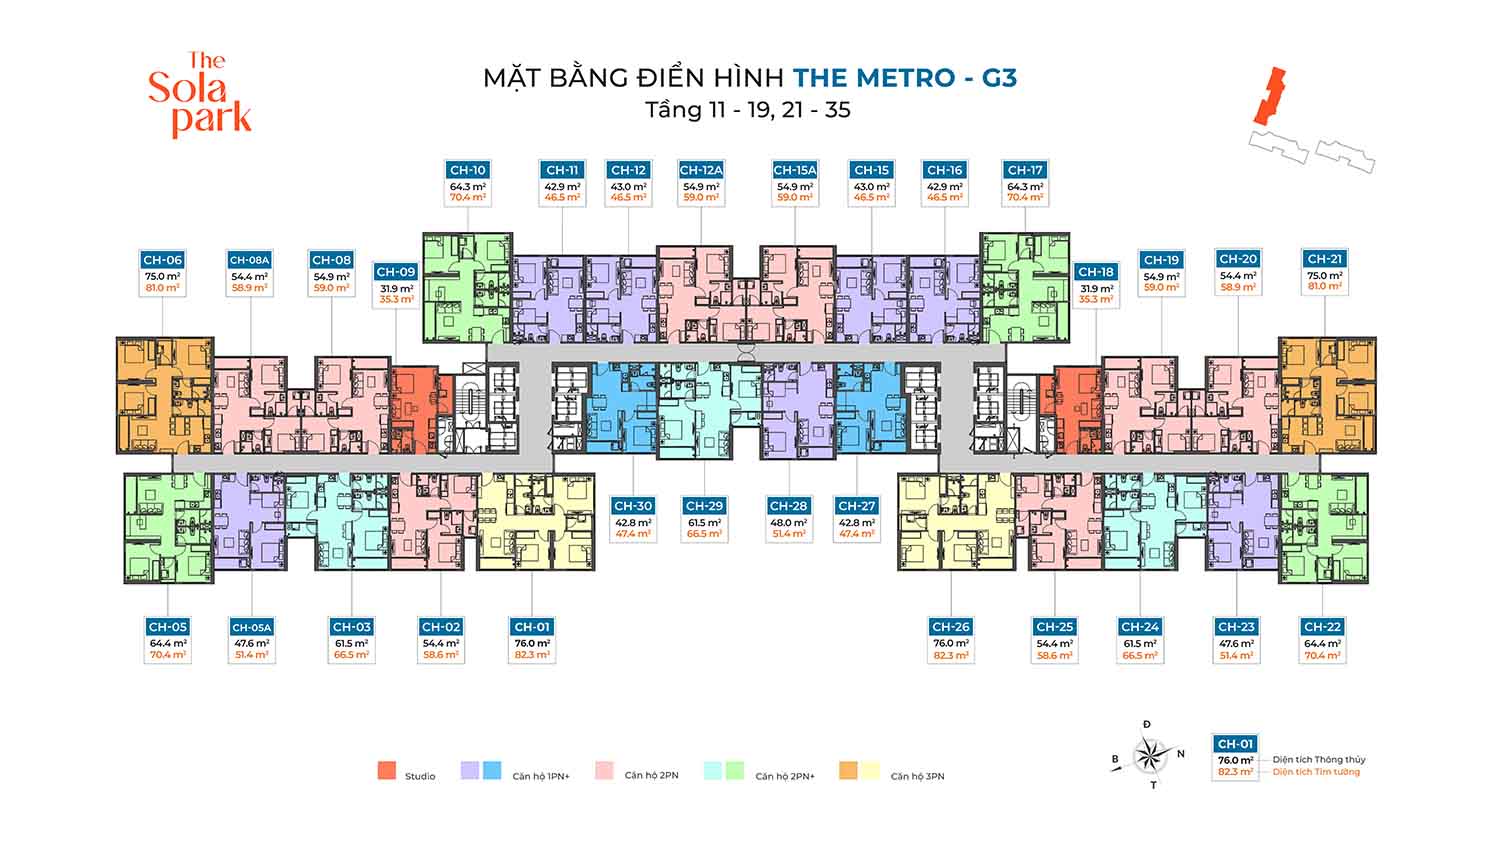 G3-the-Metro-mat-bang-tang-dien-hinh-tang-11-19-21-35-Imperia-Smart-City-2-The-Sola-Park-W1500